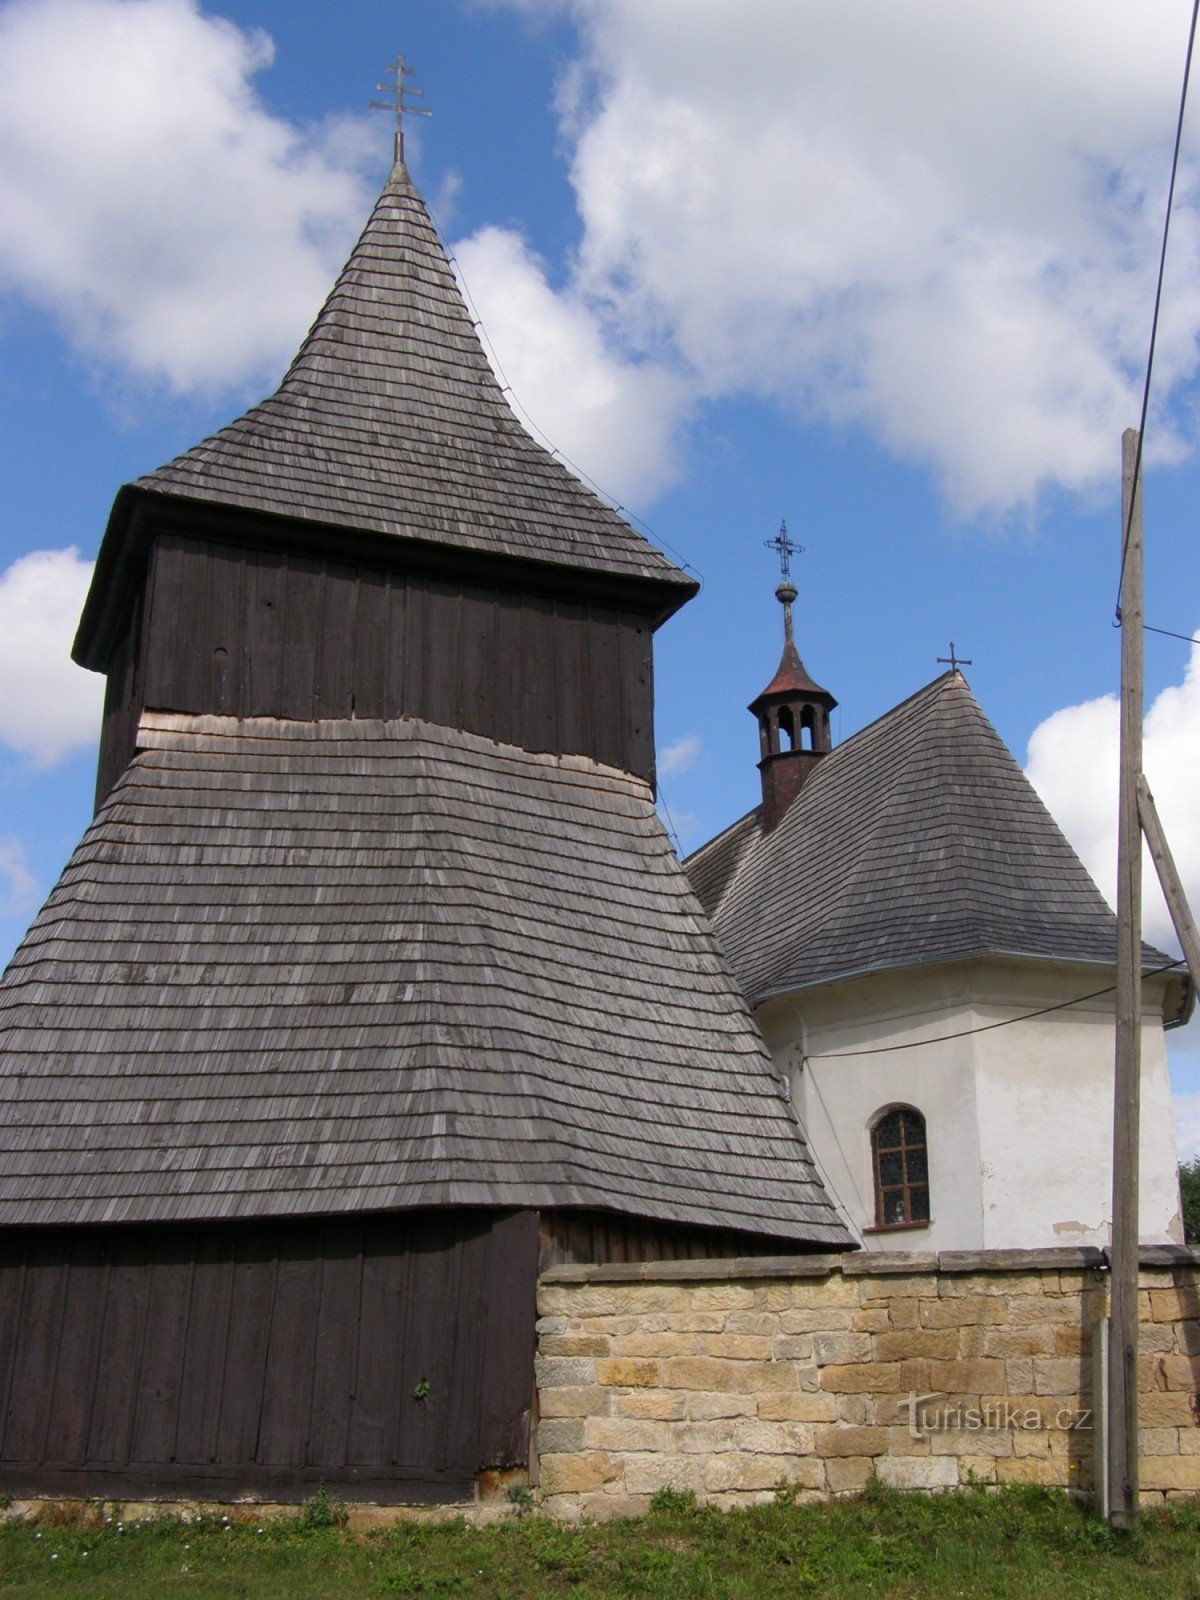 Vysočany - iglesia de madera de St. Mercados con campanario de madera